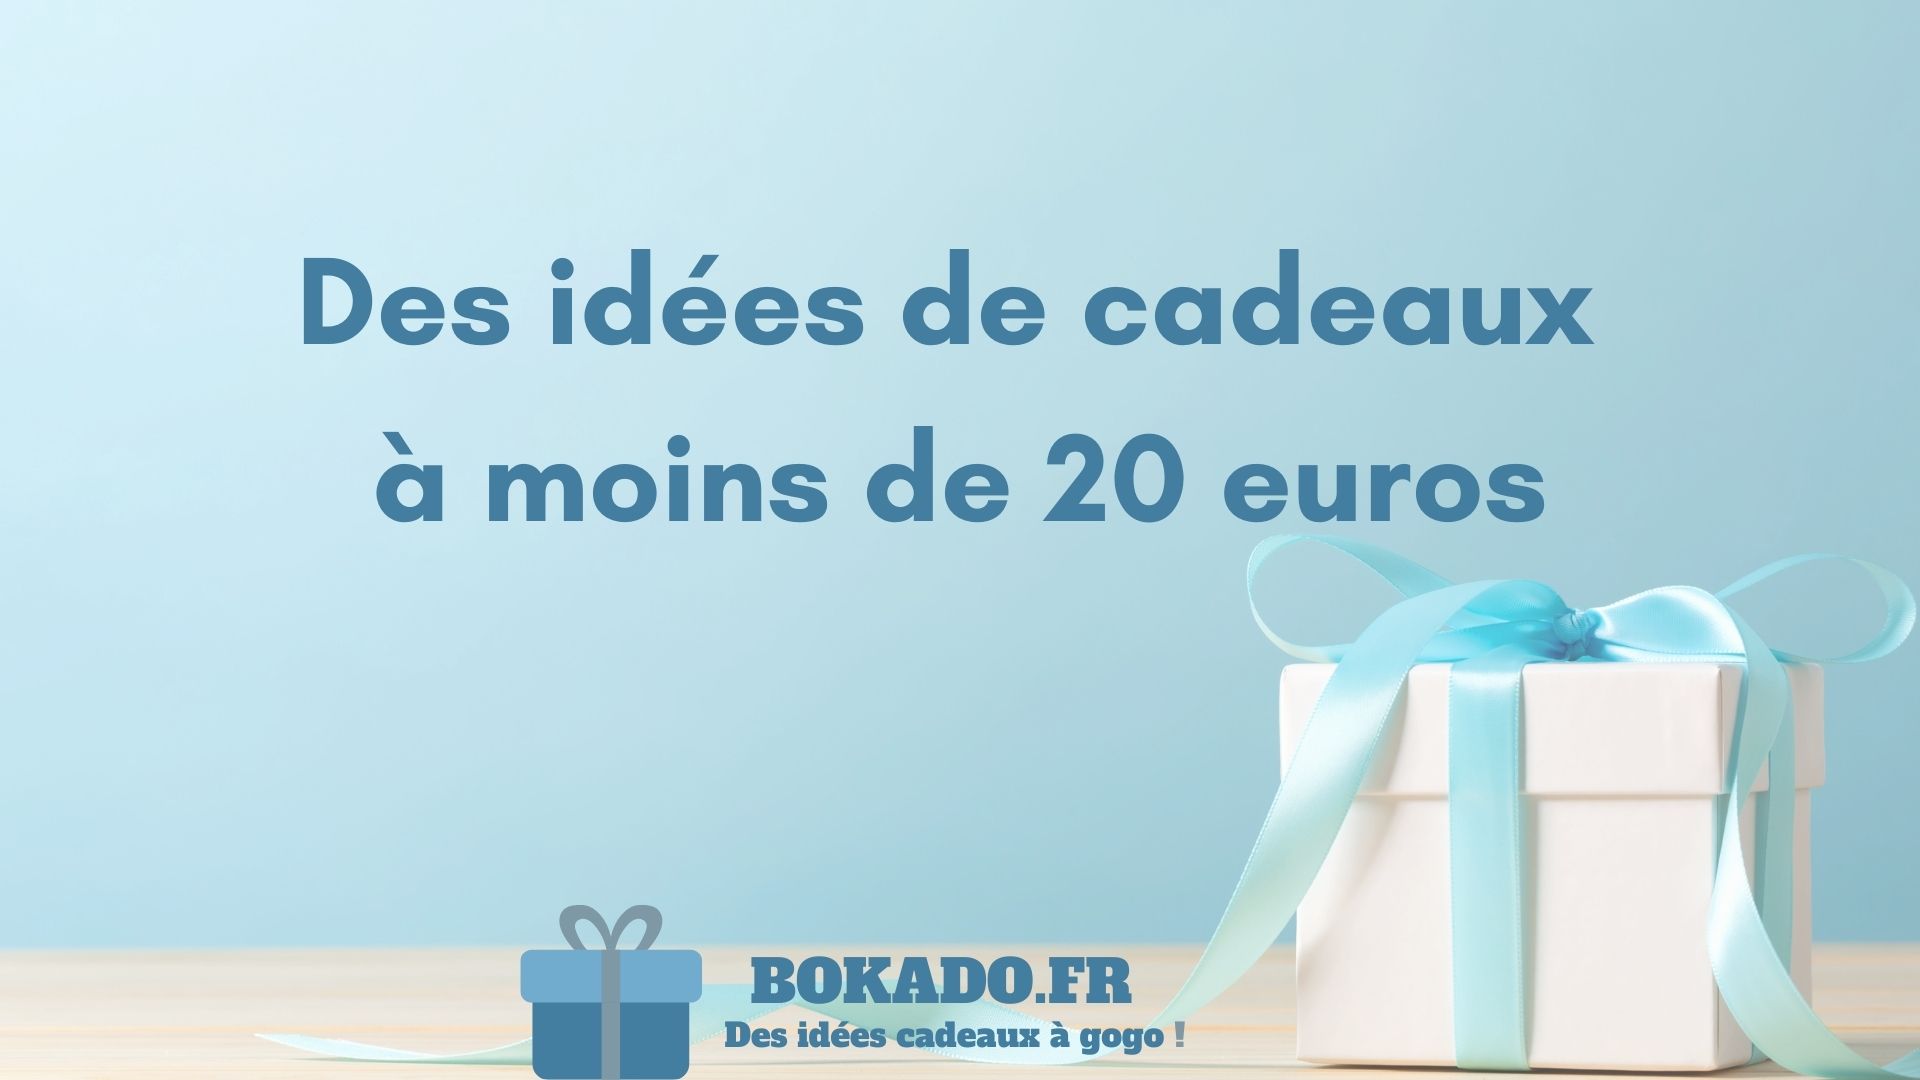 Cadeaux à moins de 20 euros : des idées originales! – L'avant gardiste